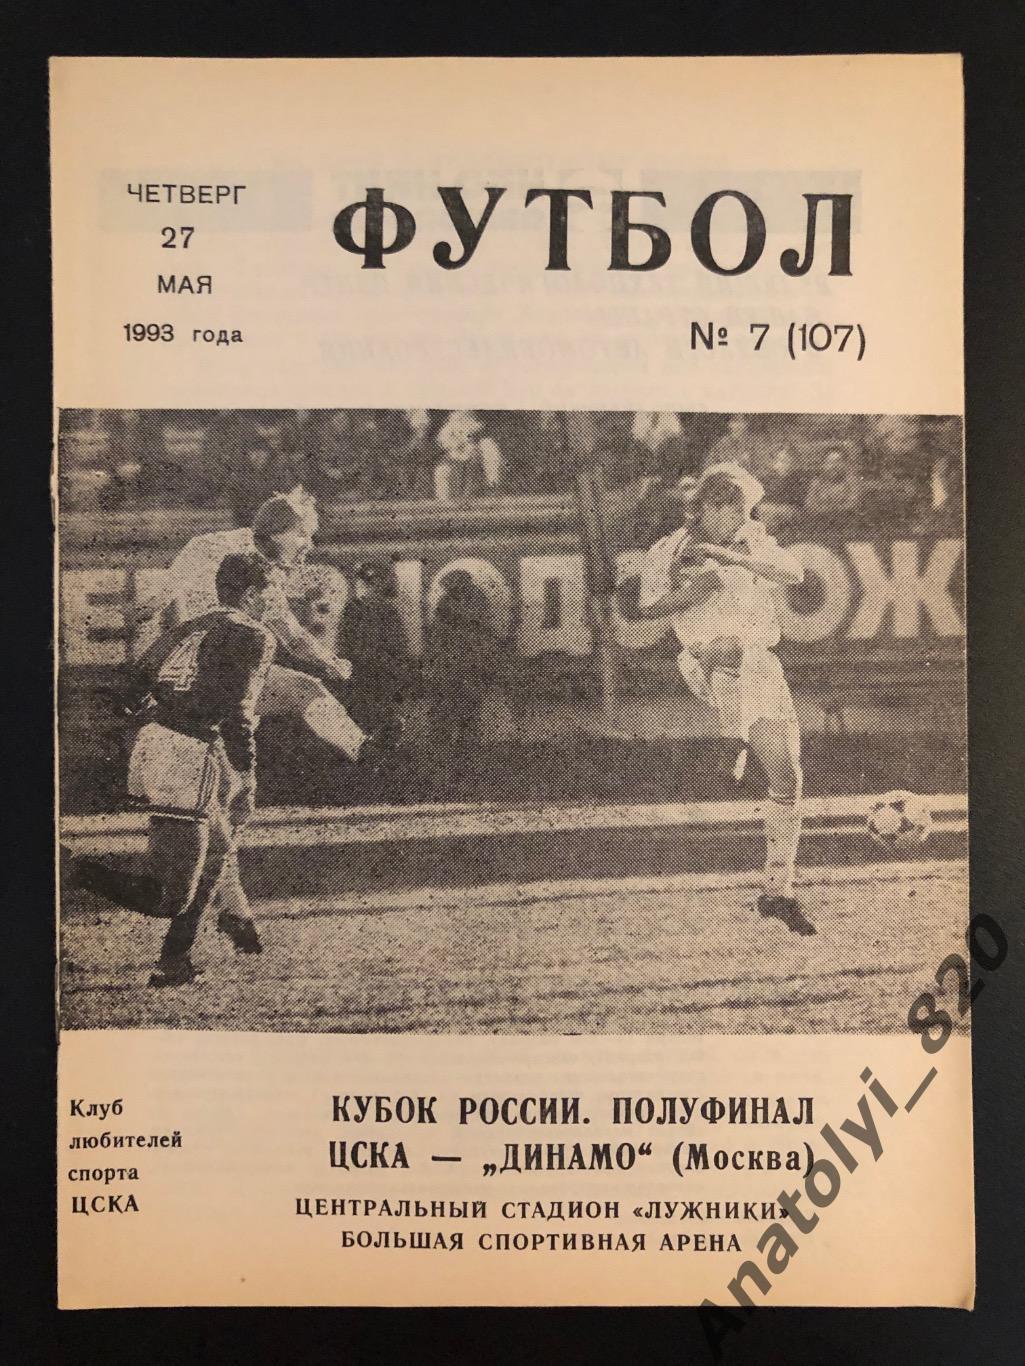 ЦСКА Москва - Динамо Москва, 27.05.1993